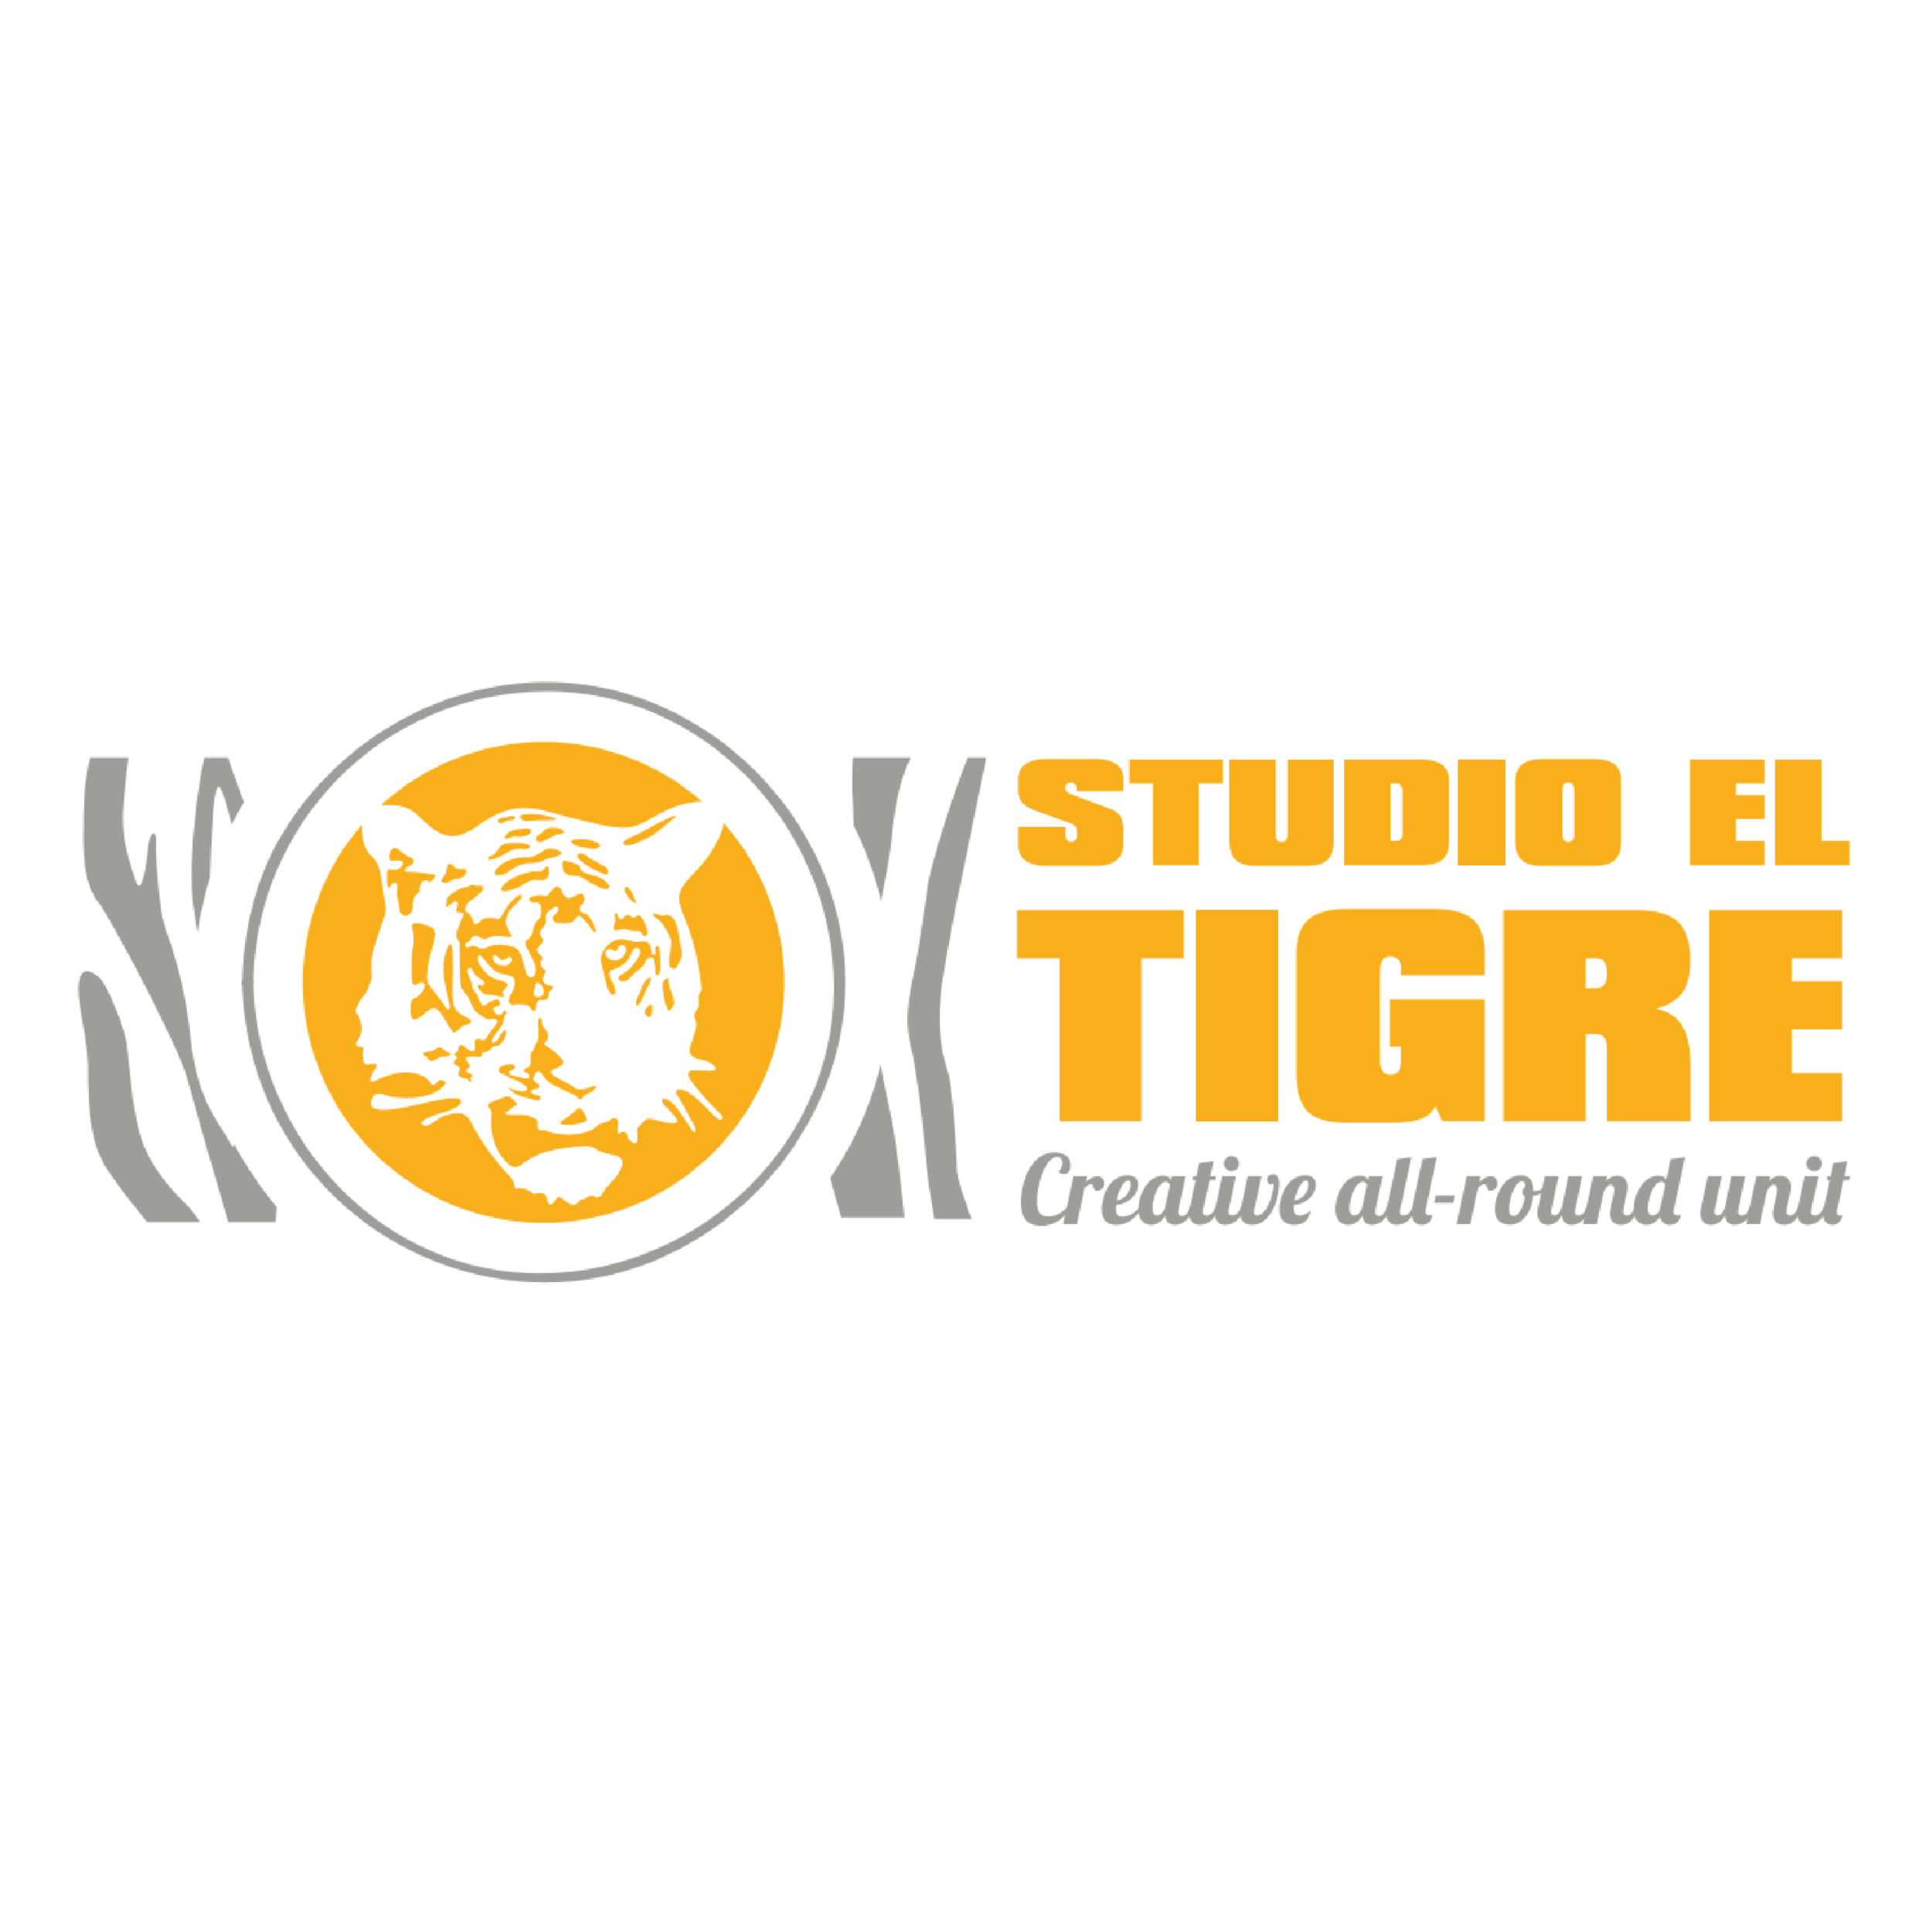 11 Studio El Tigre.png